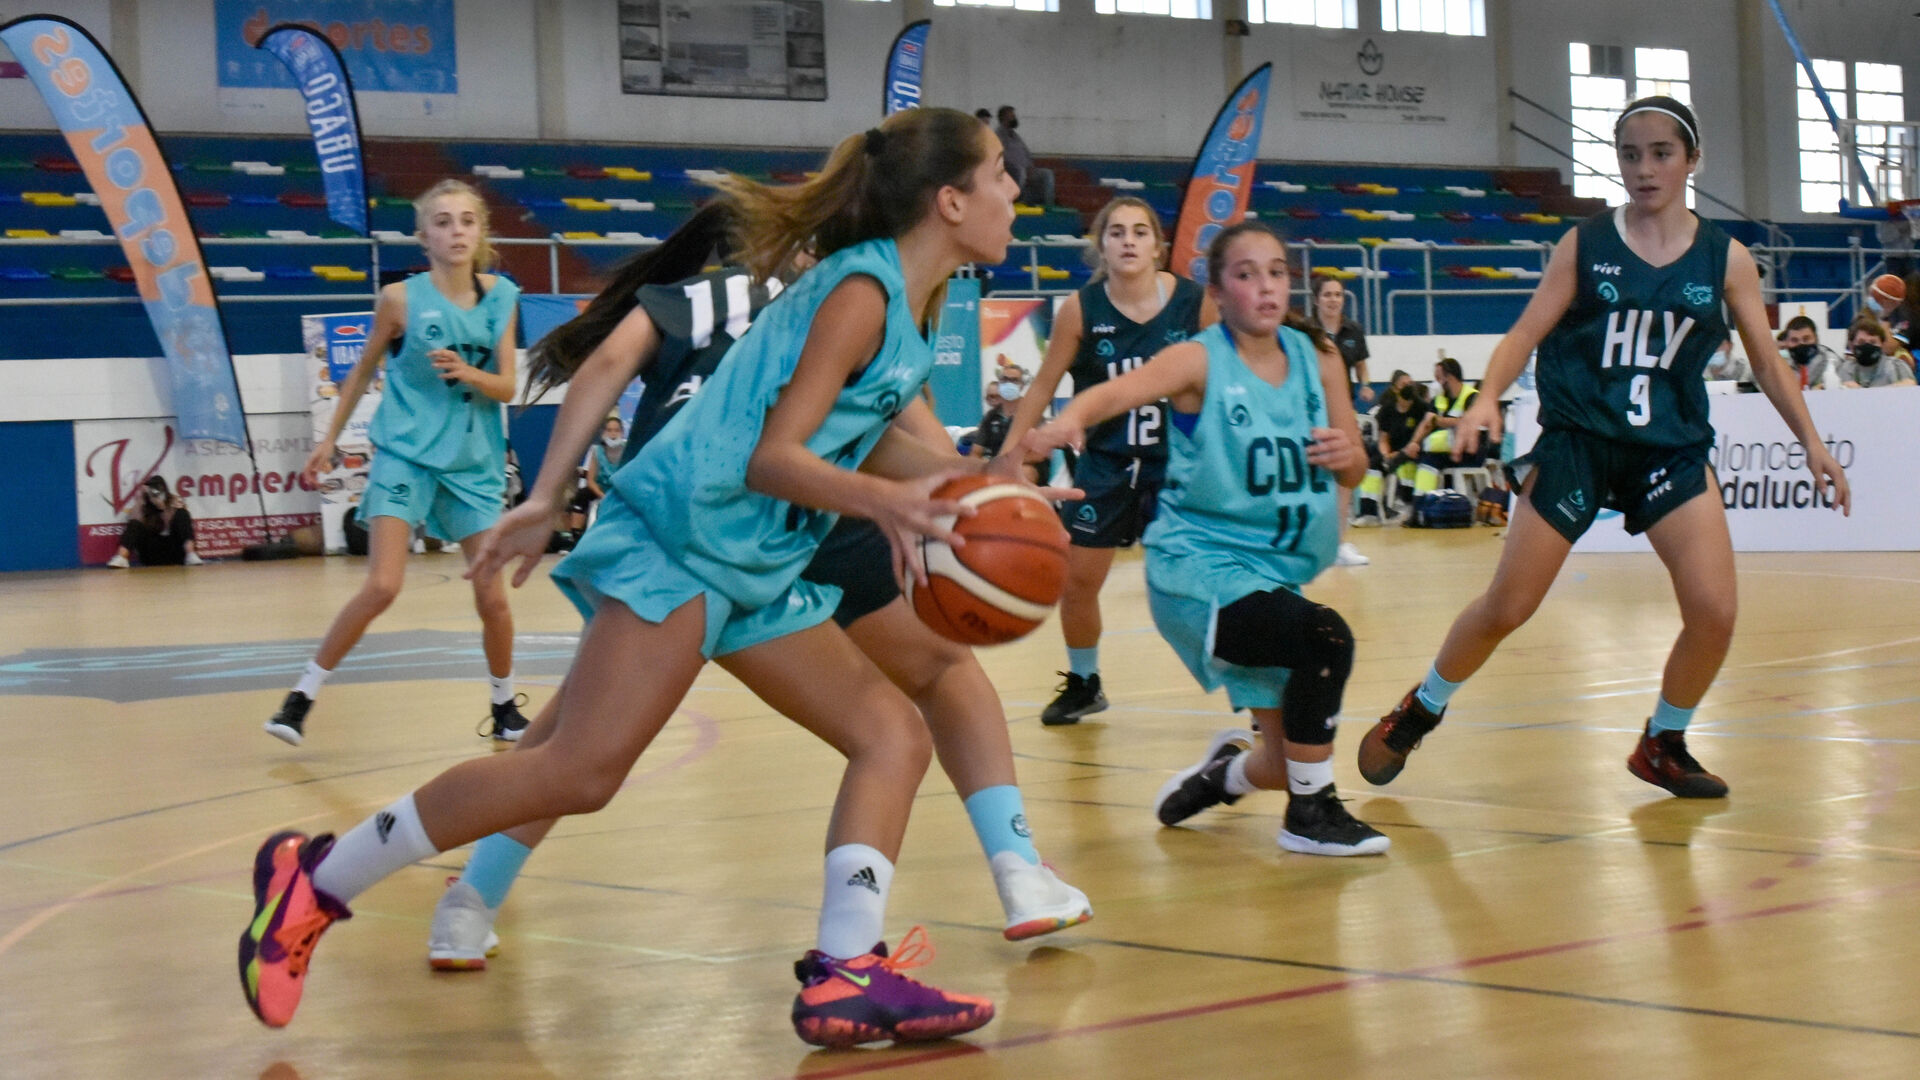 Las fotos del Campeonato de Andaluc&iacute;a infantil femenino de baloncesto